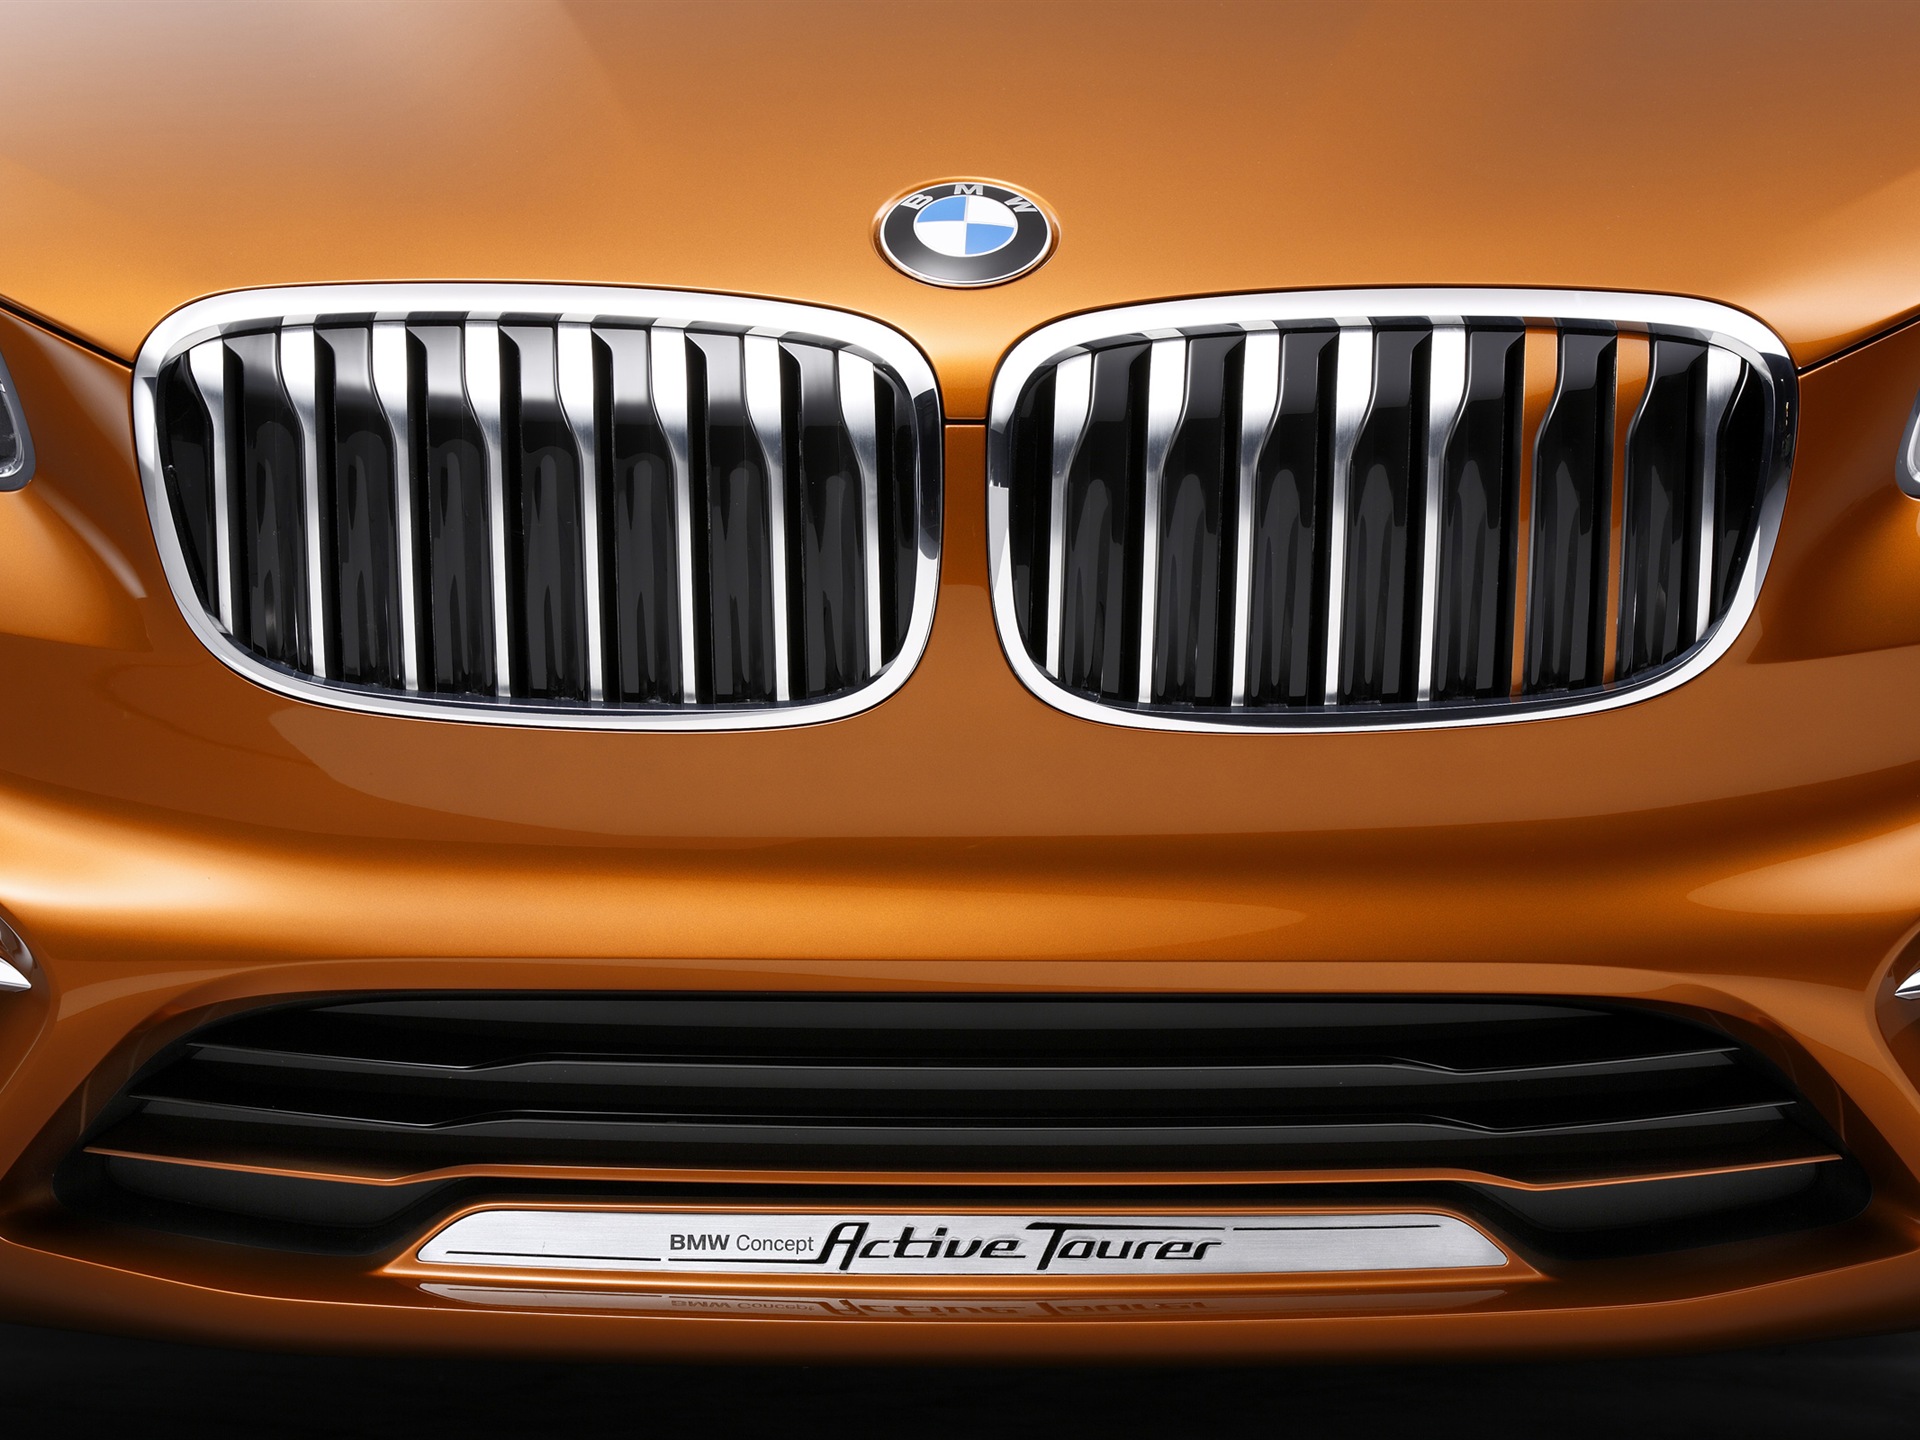 2013 BMW Concept activos Tourer fondos de pantalla de alta definición #15 - 1920x1440